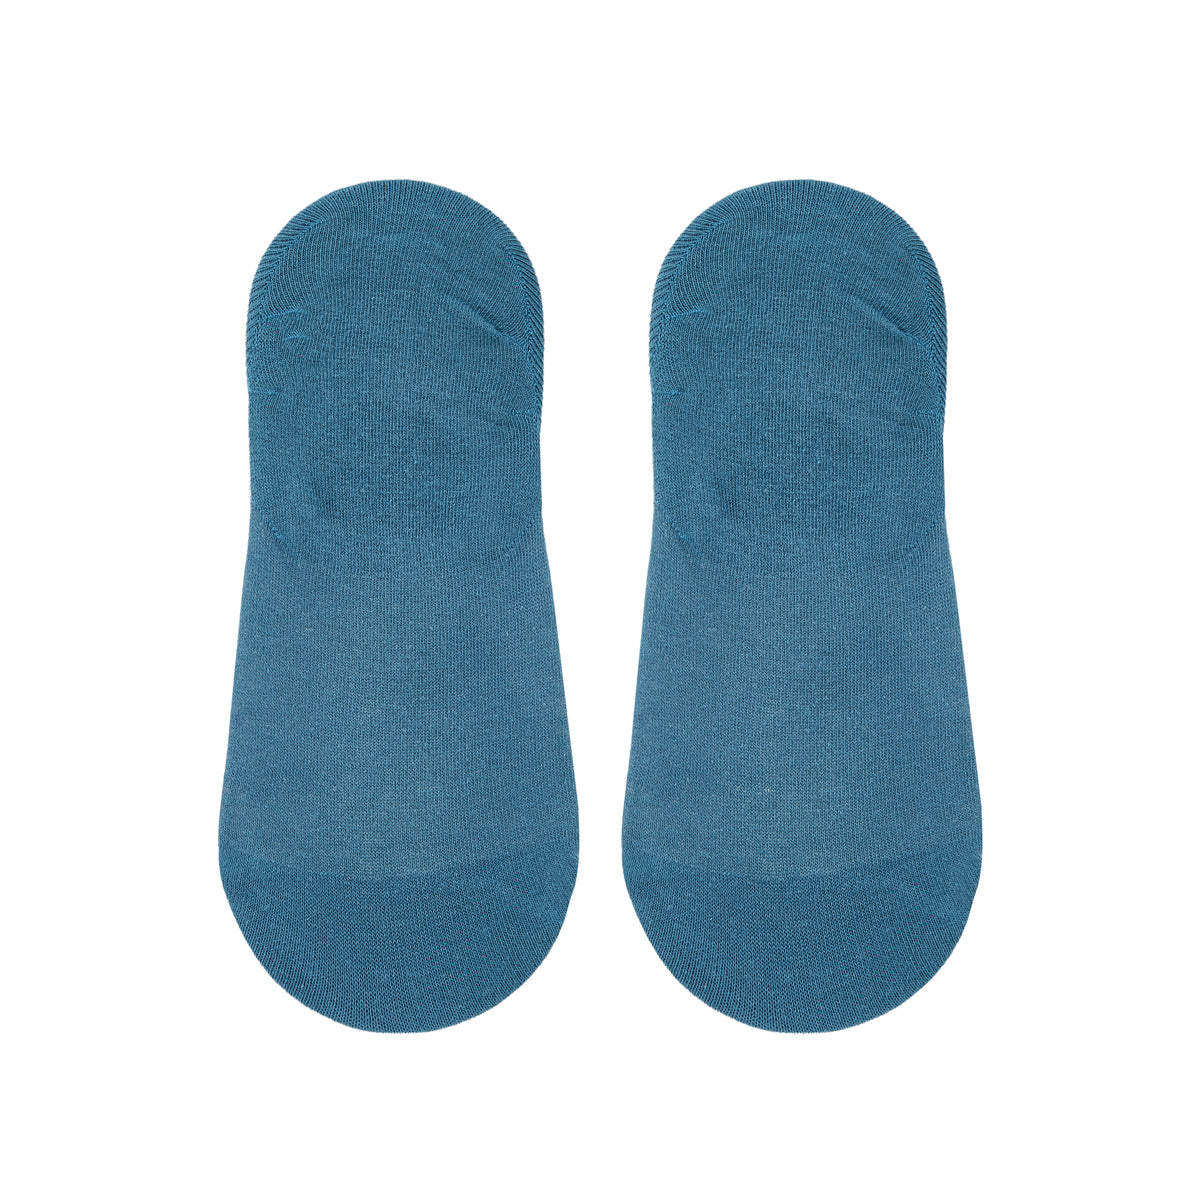 Mens Printed Invisible Socks - Ping Pong - IDENTITY Apparel Shop